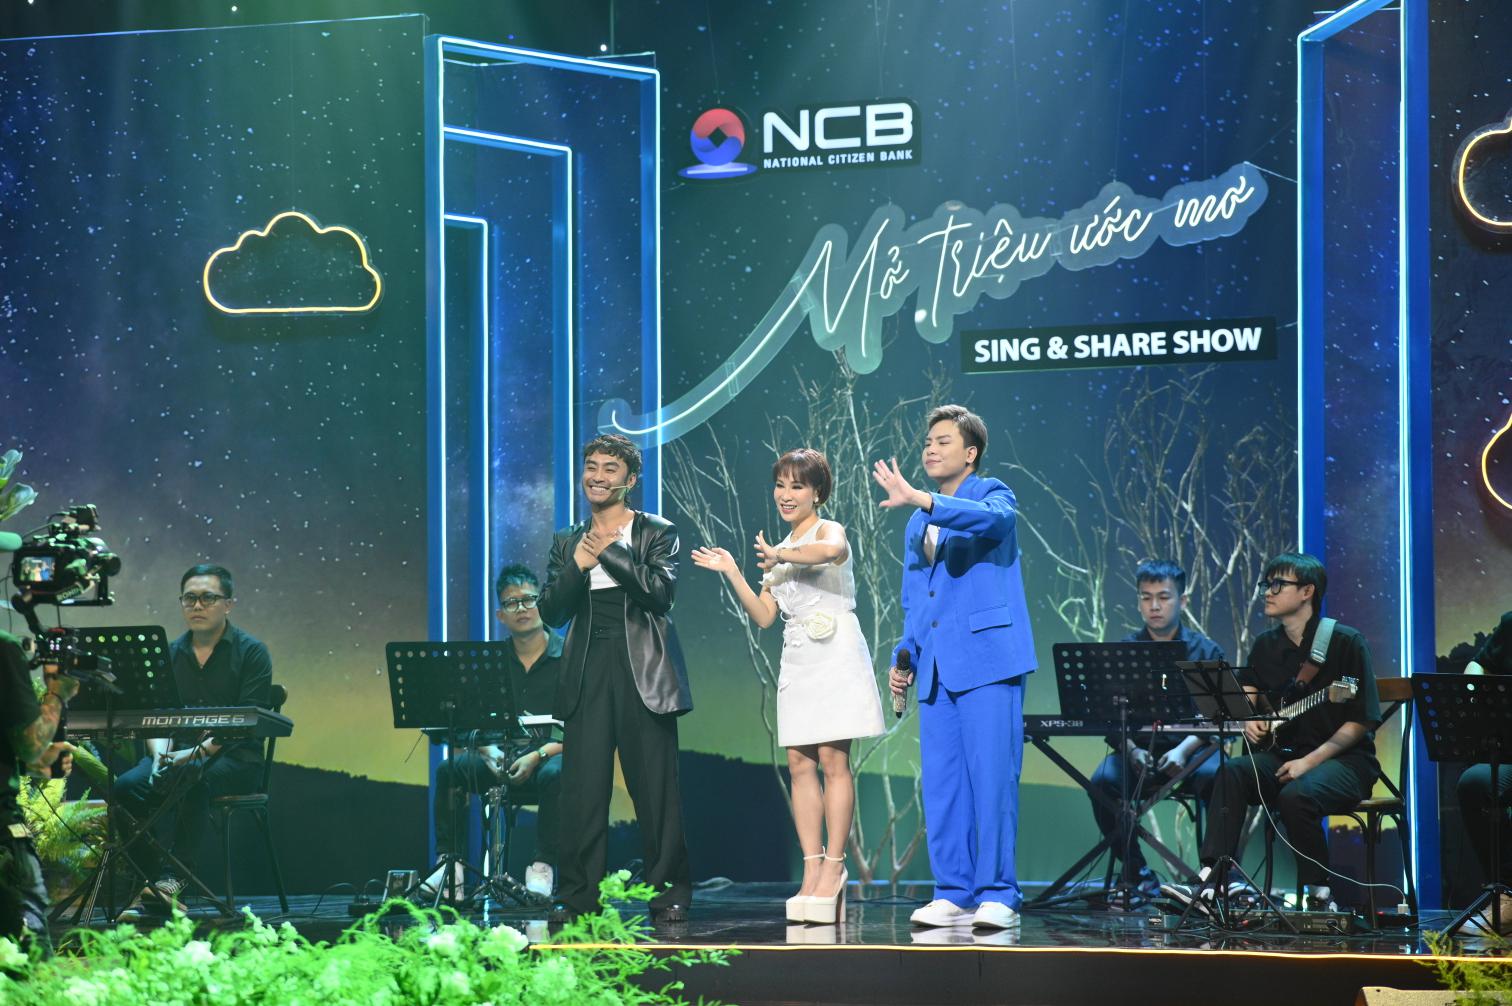 Giải mã độ hot của “NCB Sing & Share Show - Mở triệu ước mơ” - ảnh 3